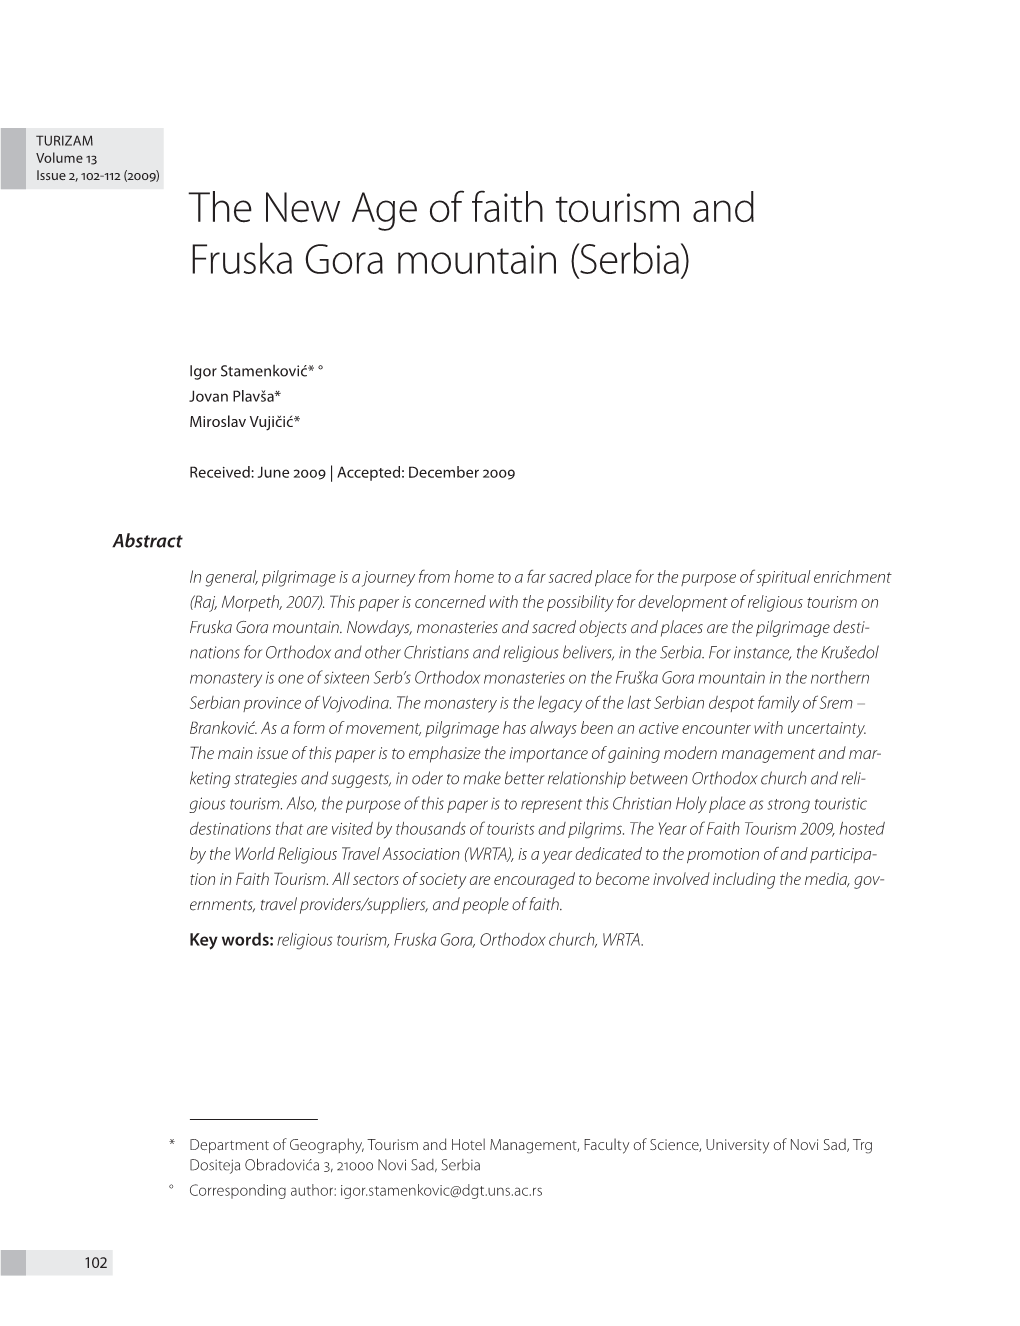 The New Age of Faith Tourism and Fruska Gora Mountain (Serbia)